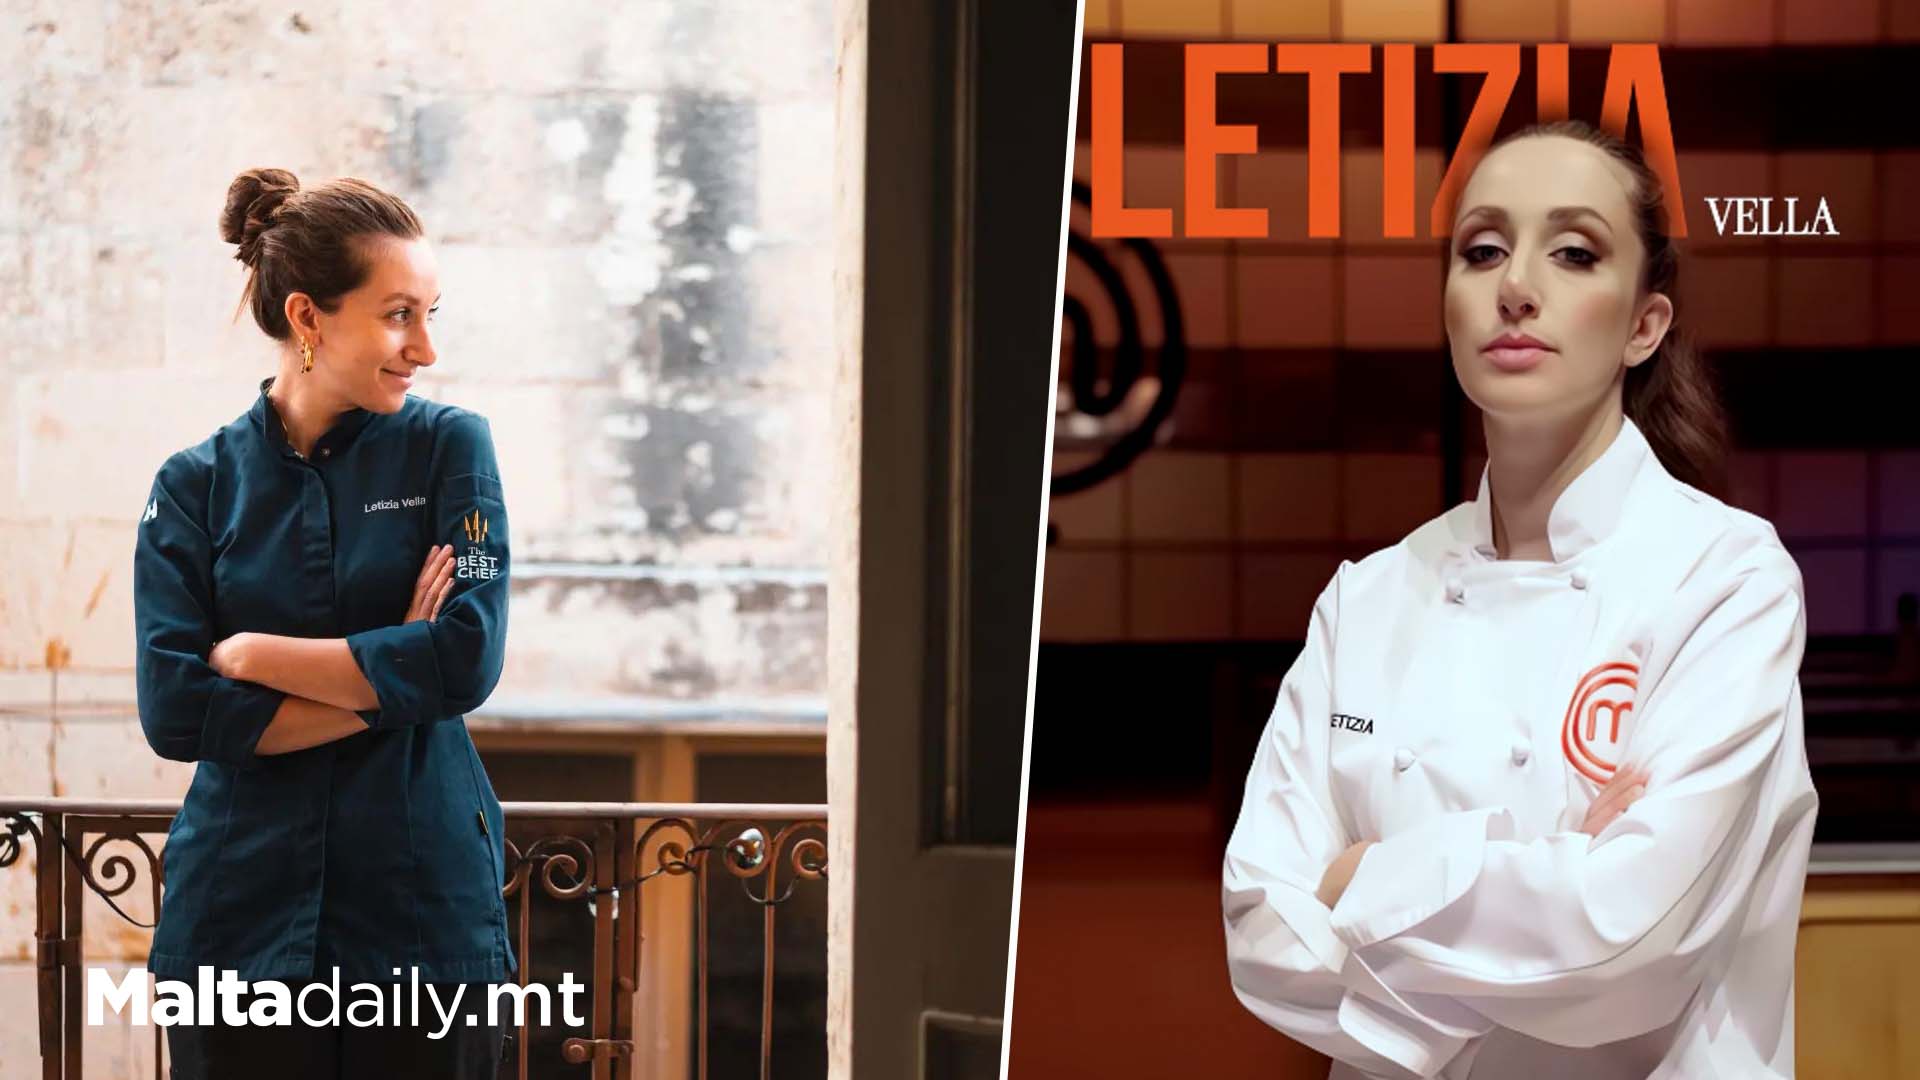 Letizia Vella Revealed As Second Master Chef Malta Judge